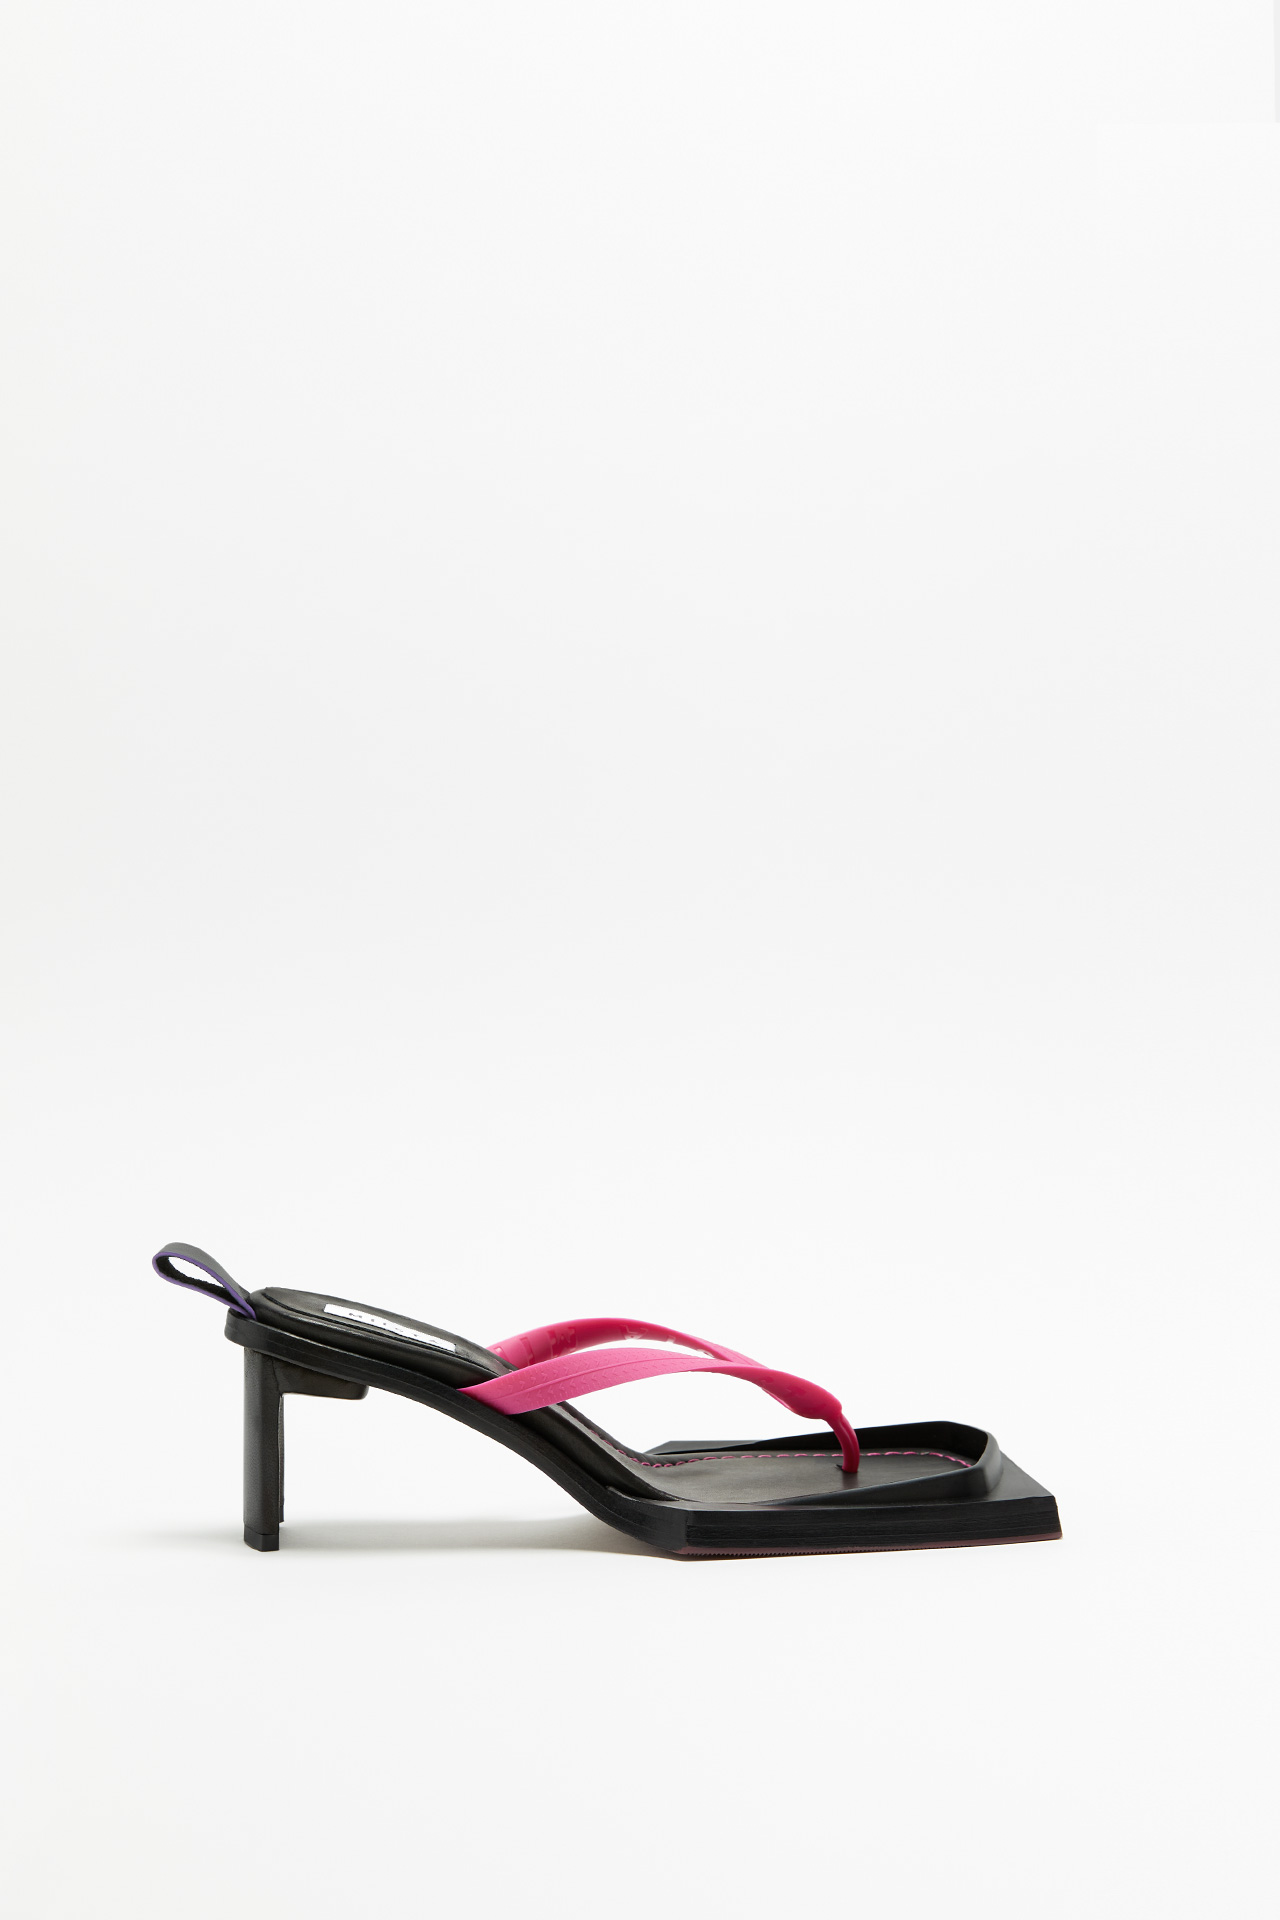 Joyce Pink Sandals | Miista Europe | Made in Spain